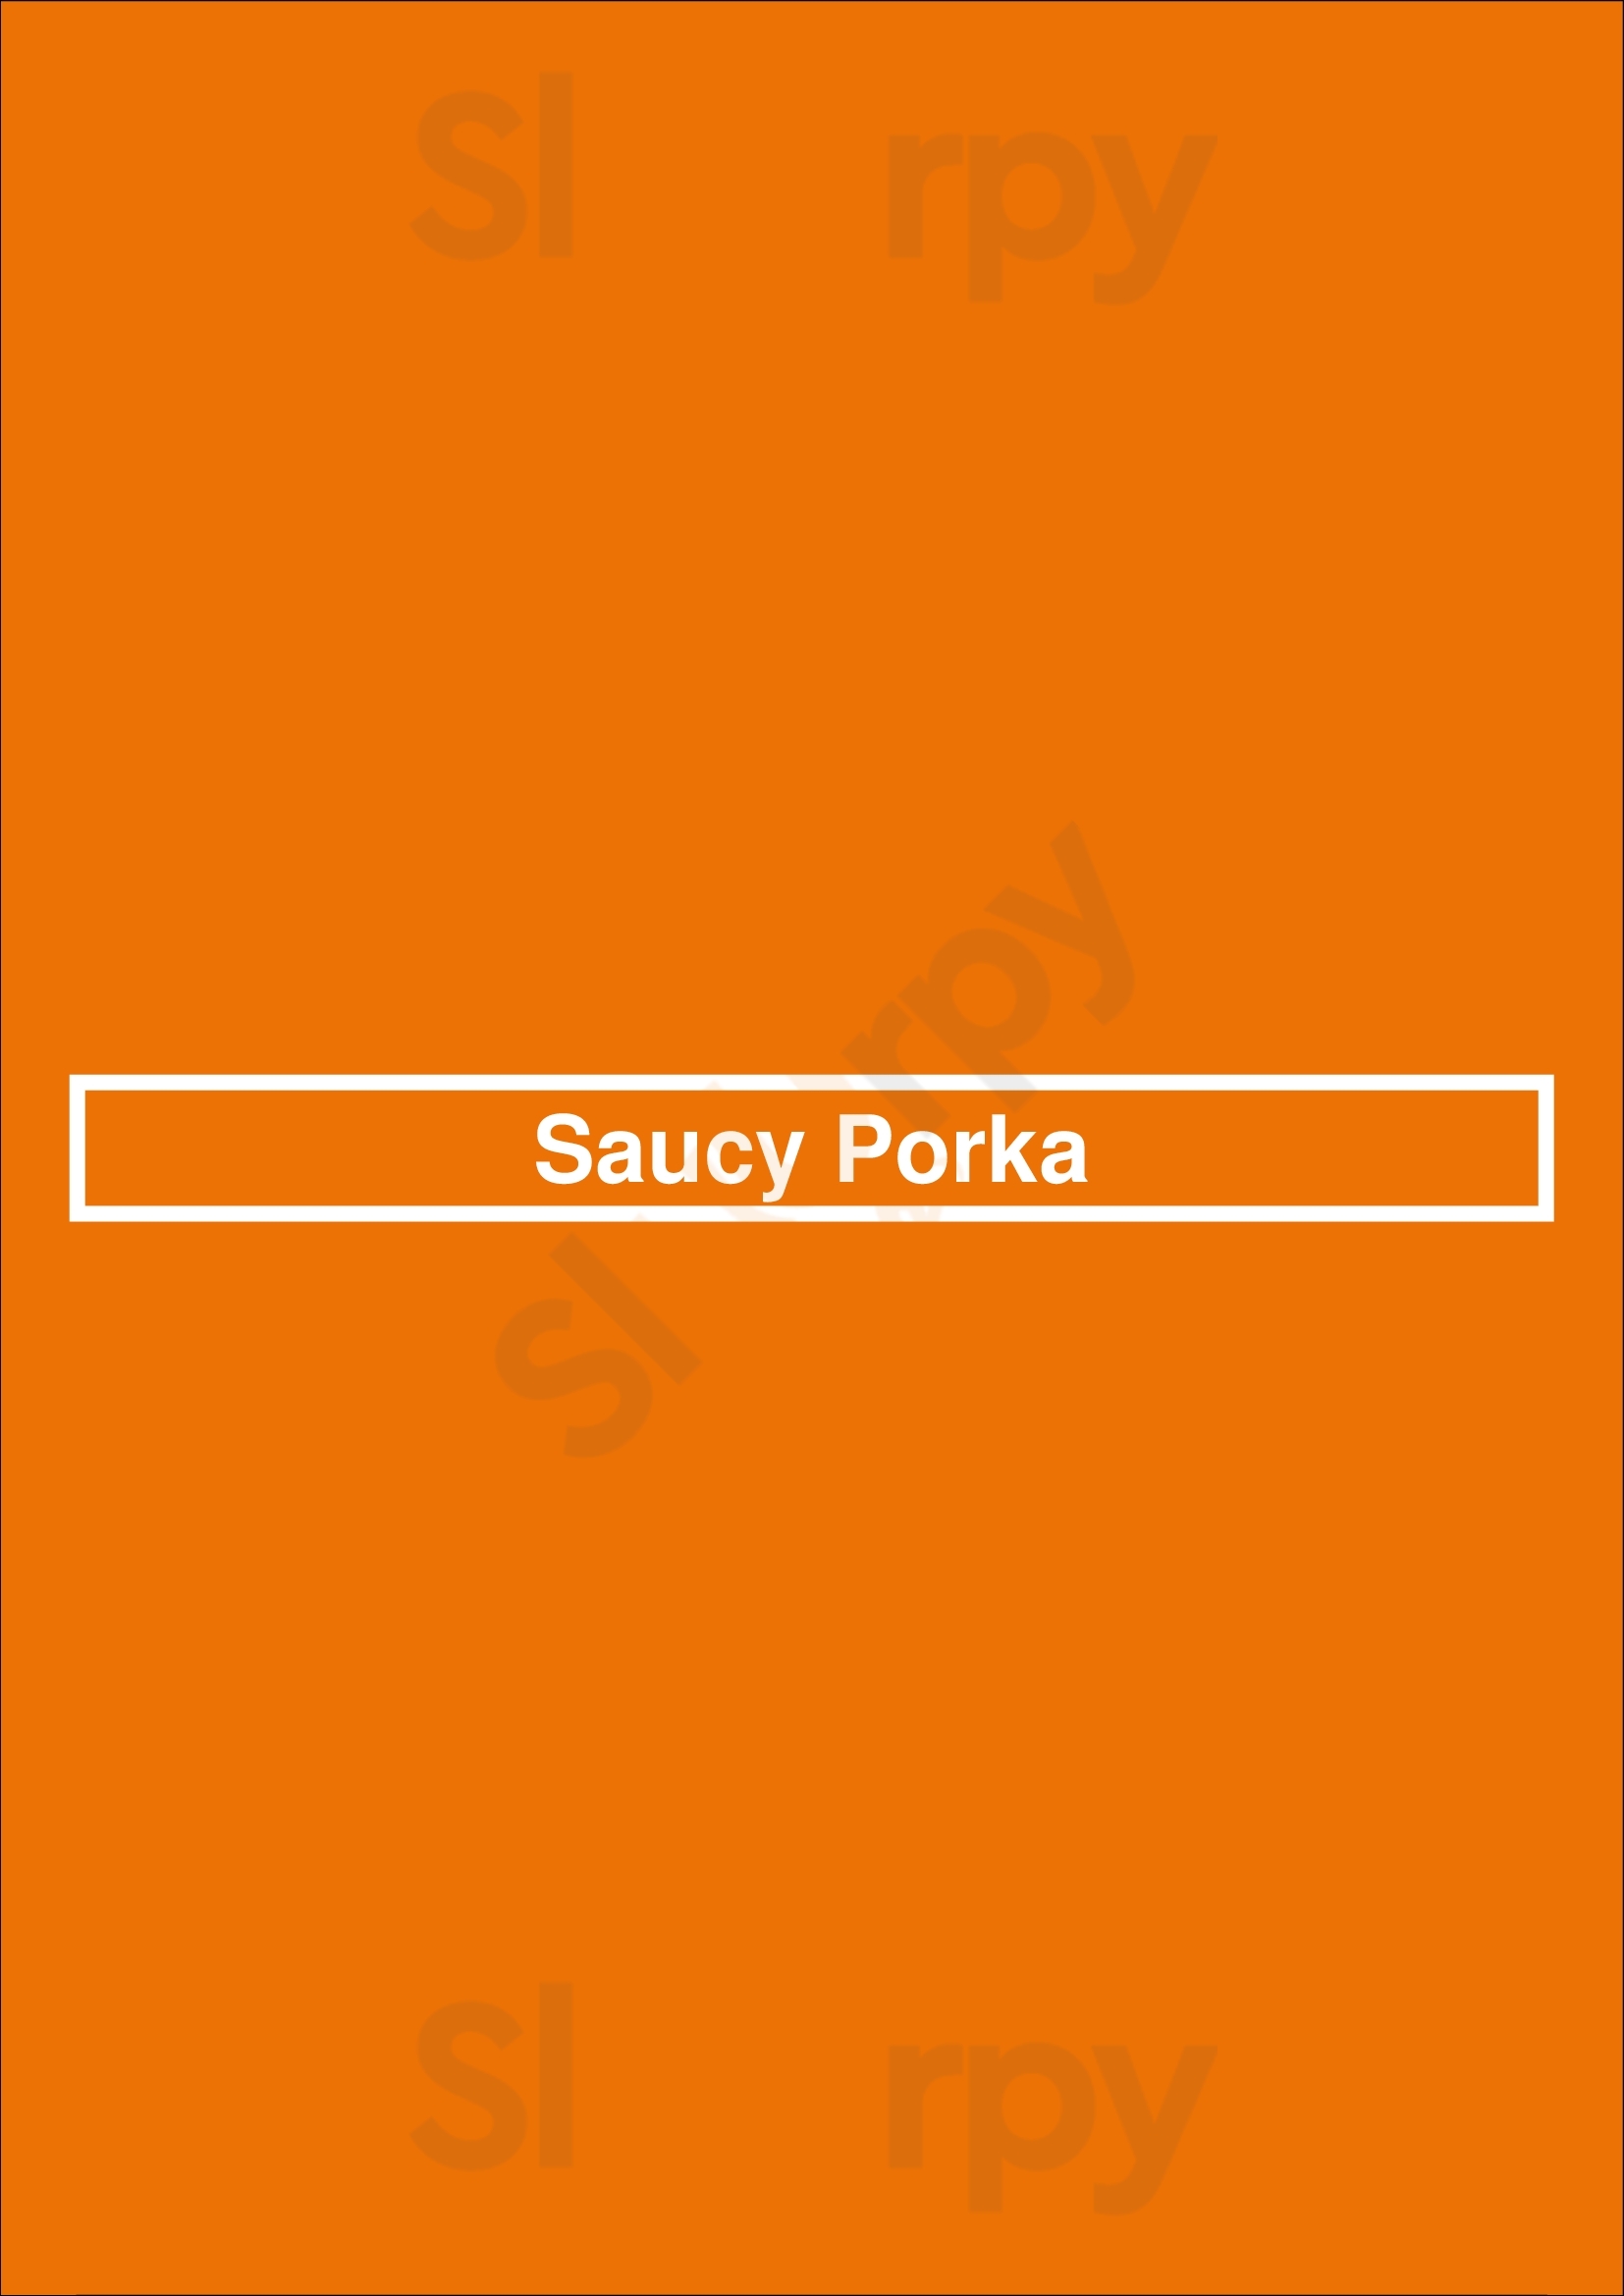 Saucy Porka Chicago Menu - 1